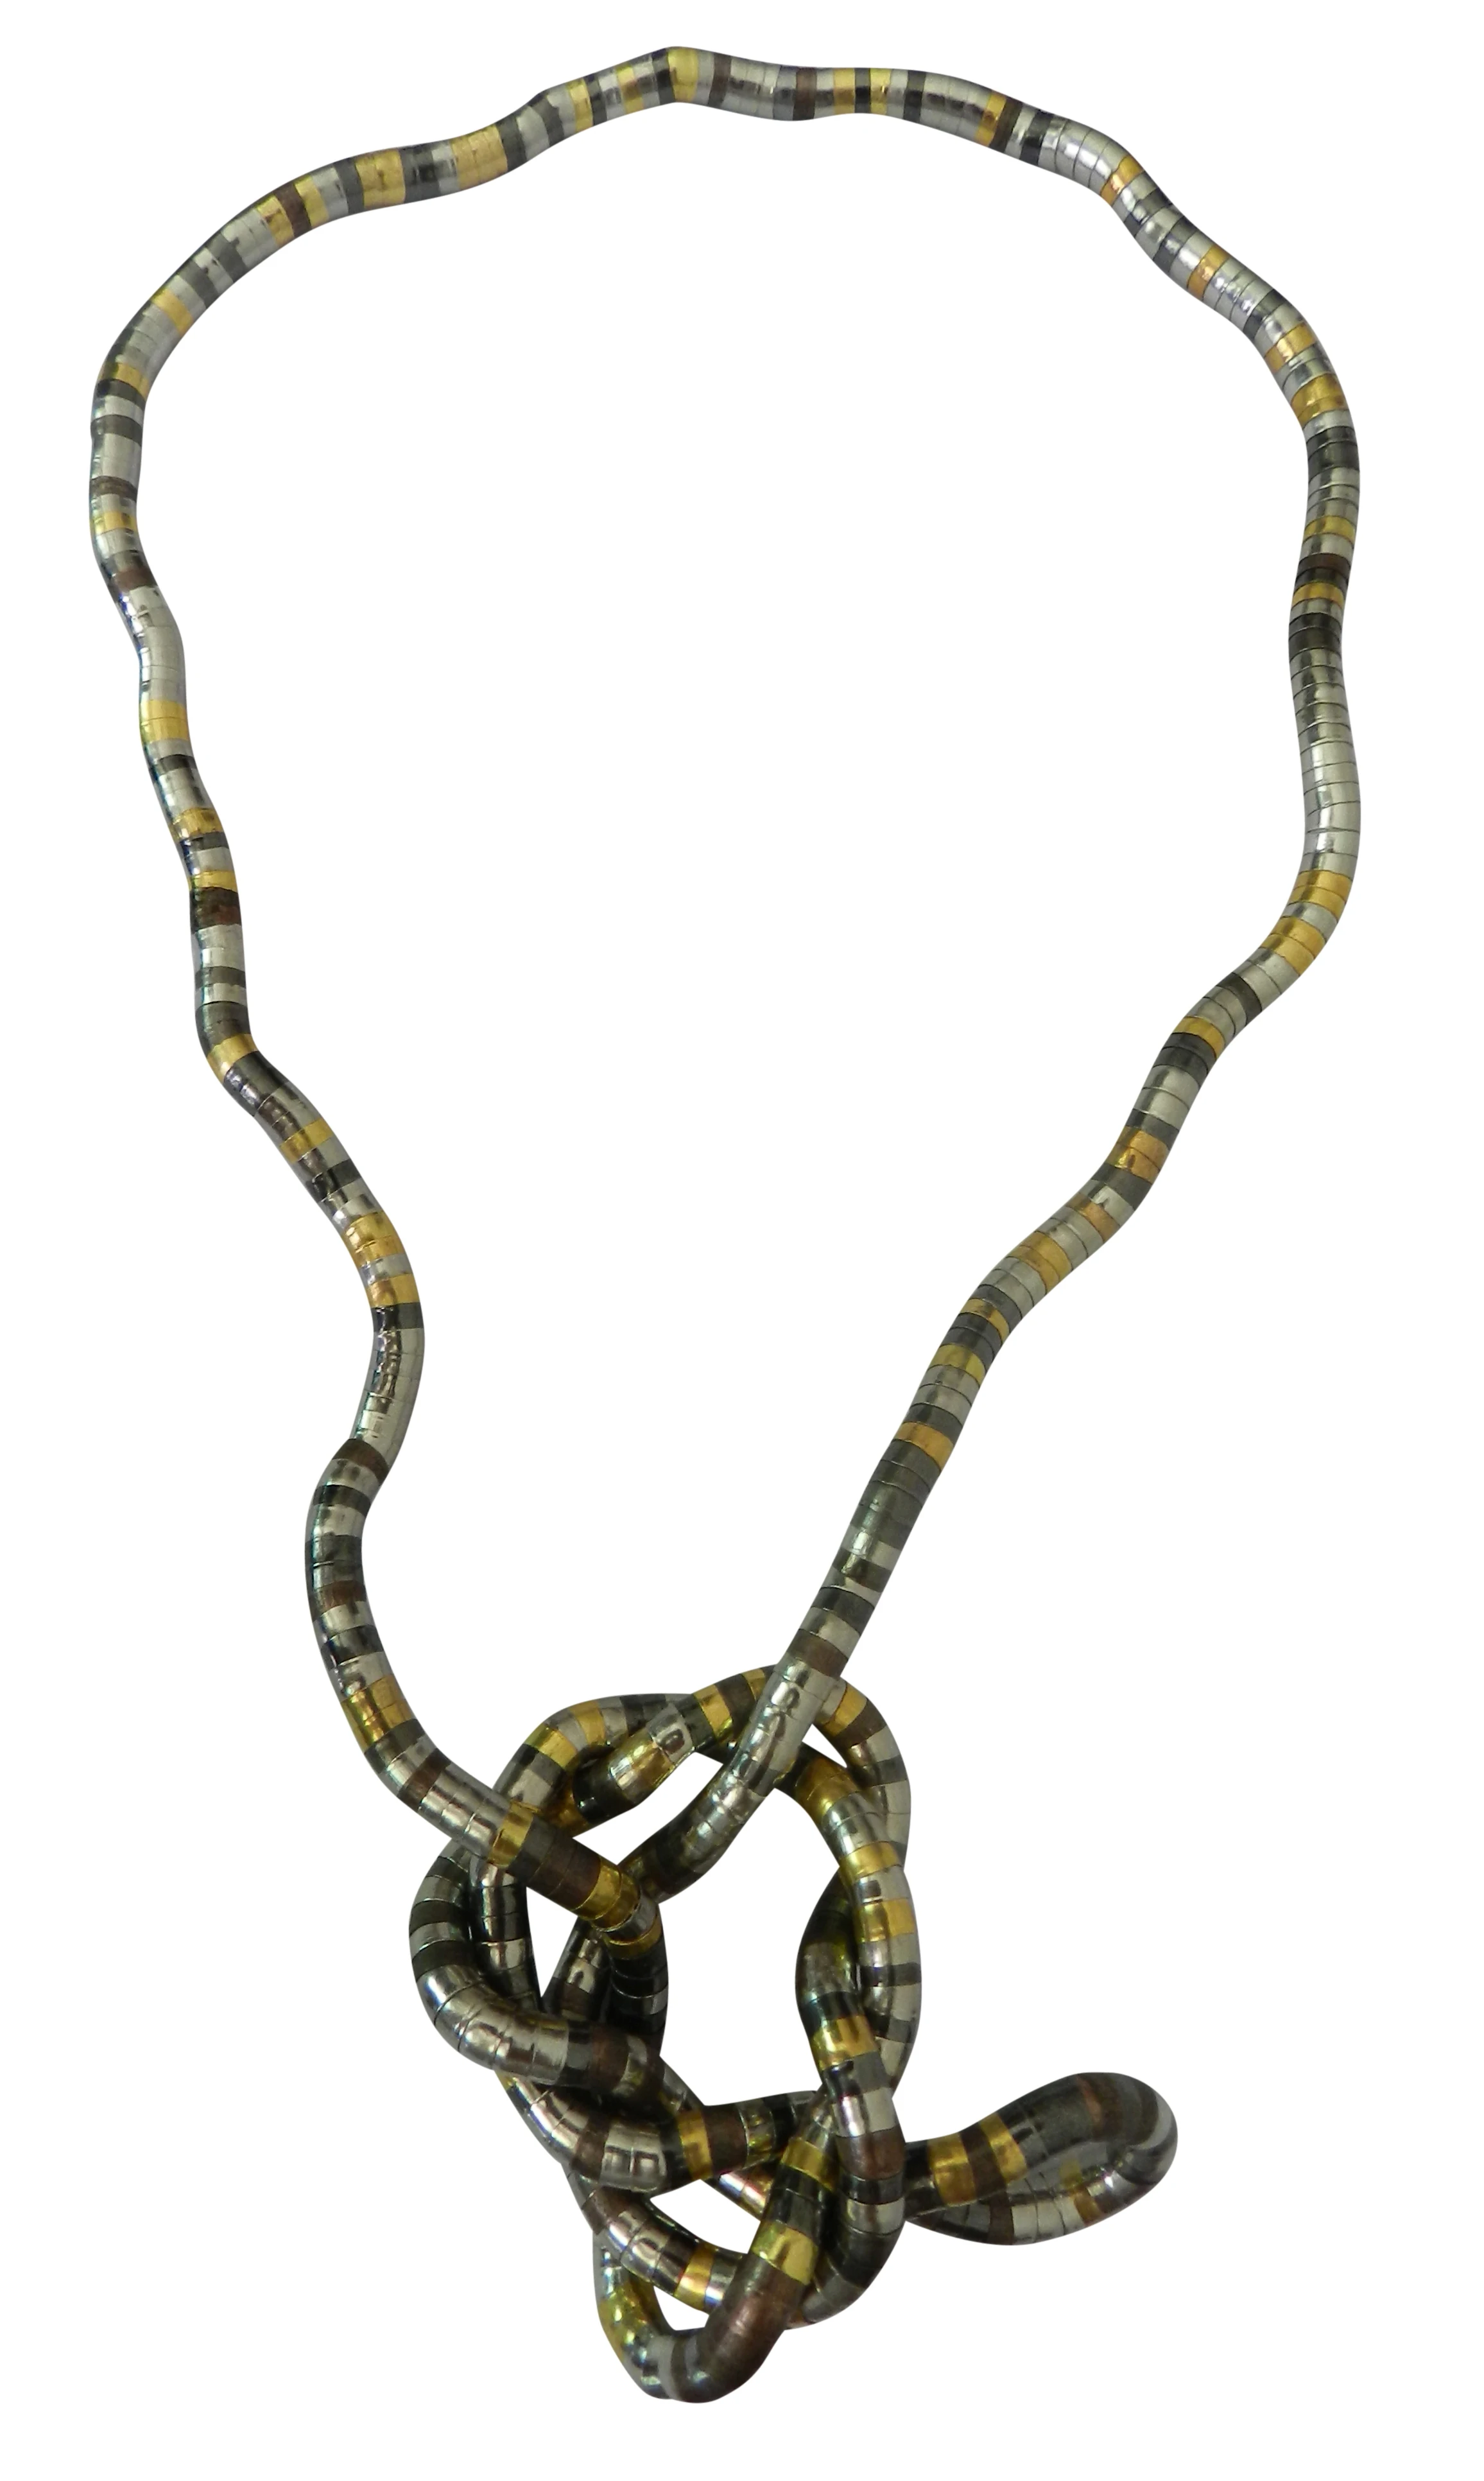 YUZHEJIE 3 шт носить вам нравится носить цепочка витого плетения 5 мм 90 см длина гибкие змейки цепи гибкие твист ювелирные изделия ожерелья